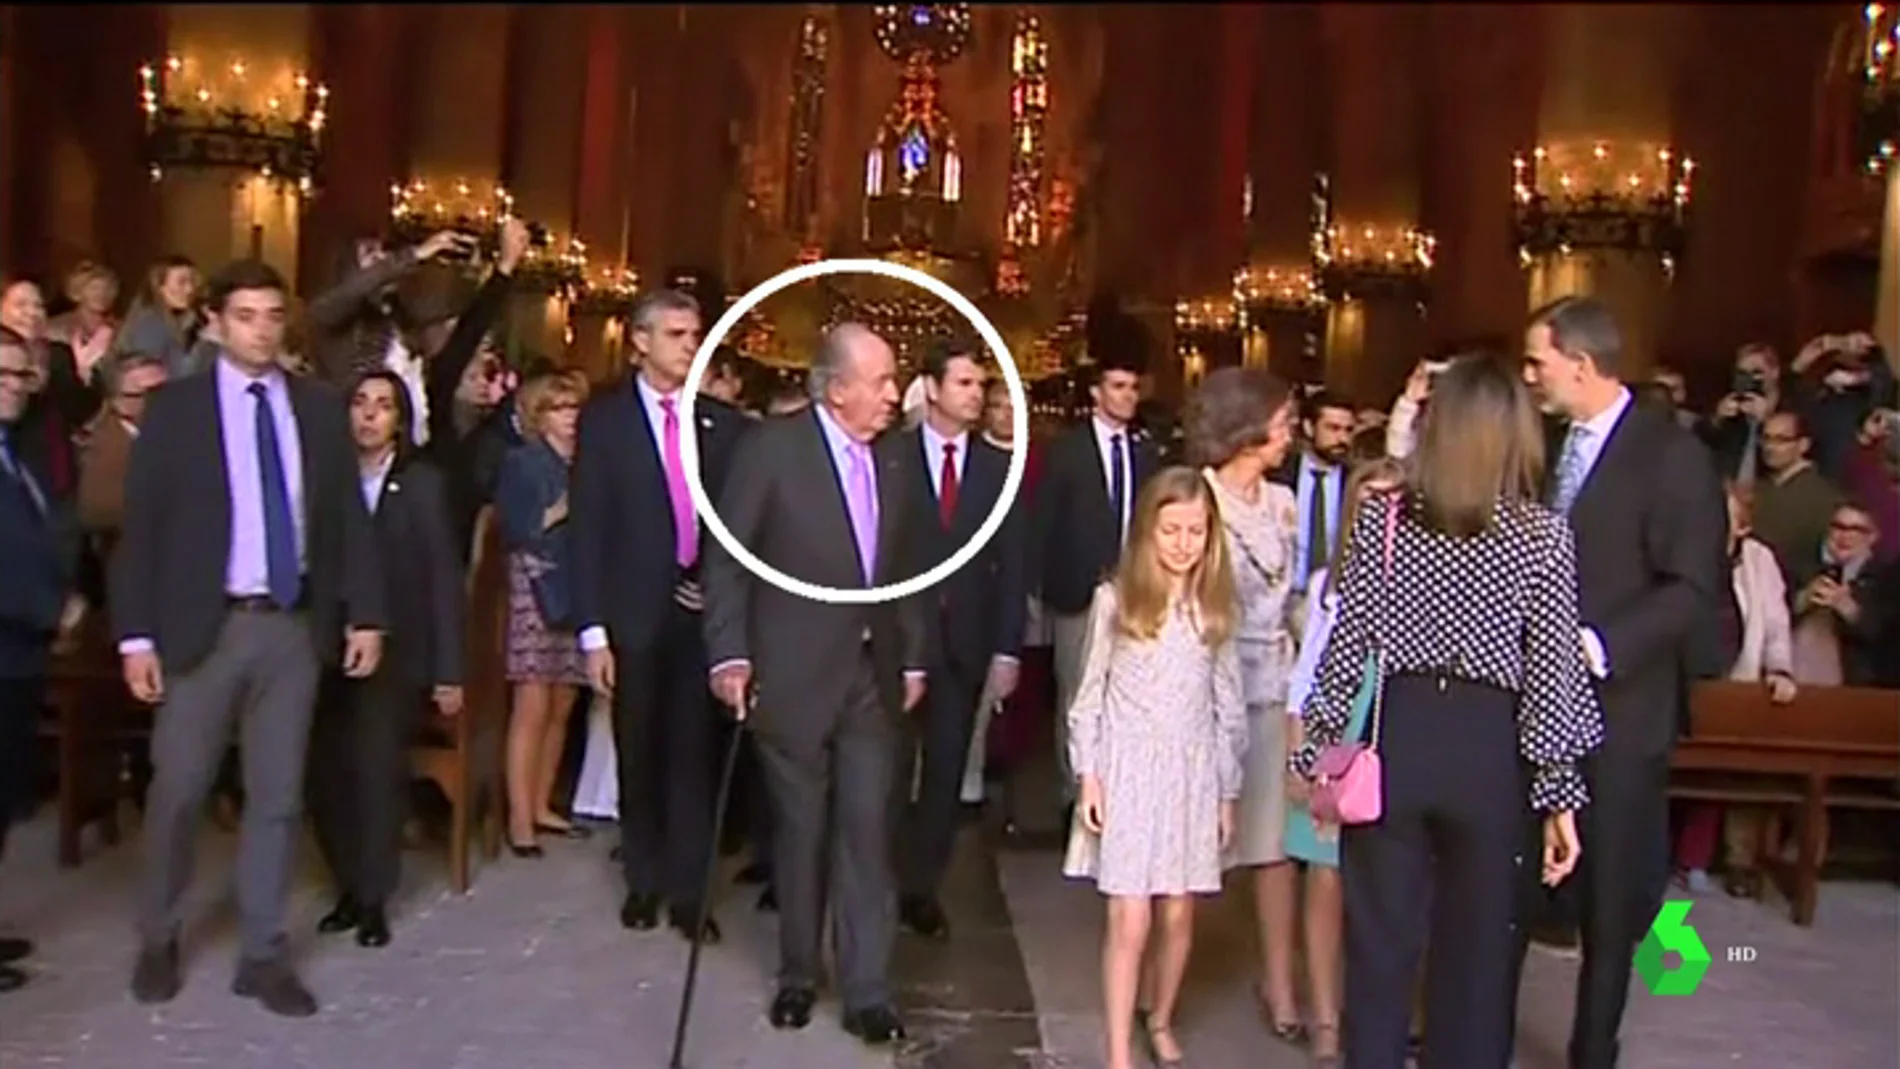 Todos los detalles del vídeo de la familia real: ¿hay rifirrafe entre Letizia y Sofía? ¿Quién aparta la mano? ¿Intenta mediar el rey?